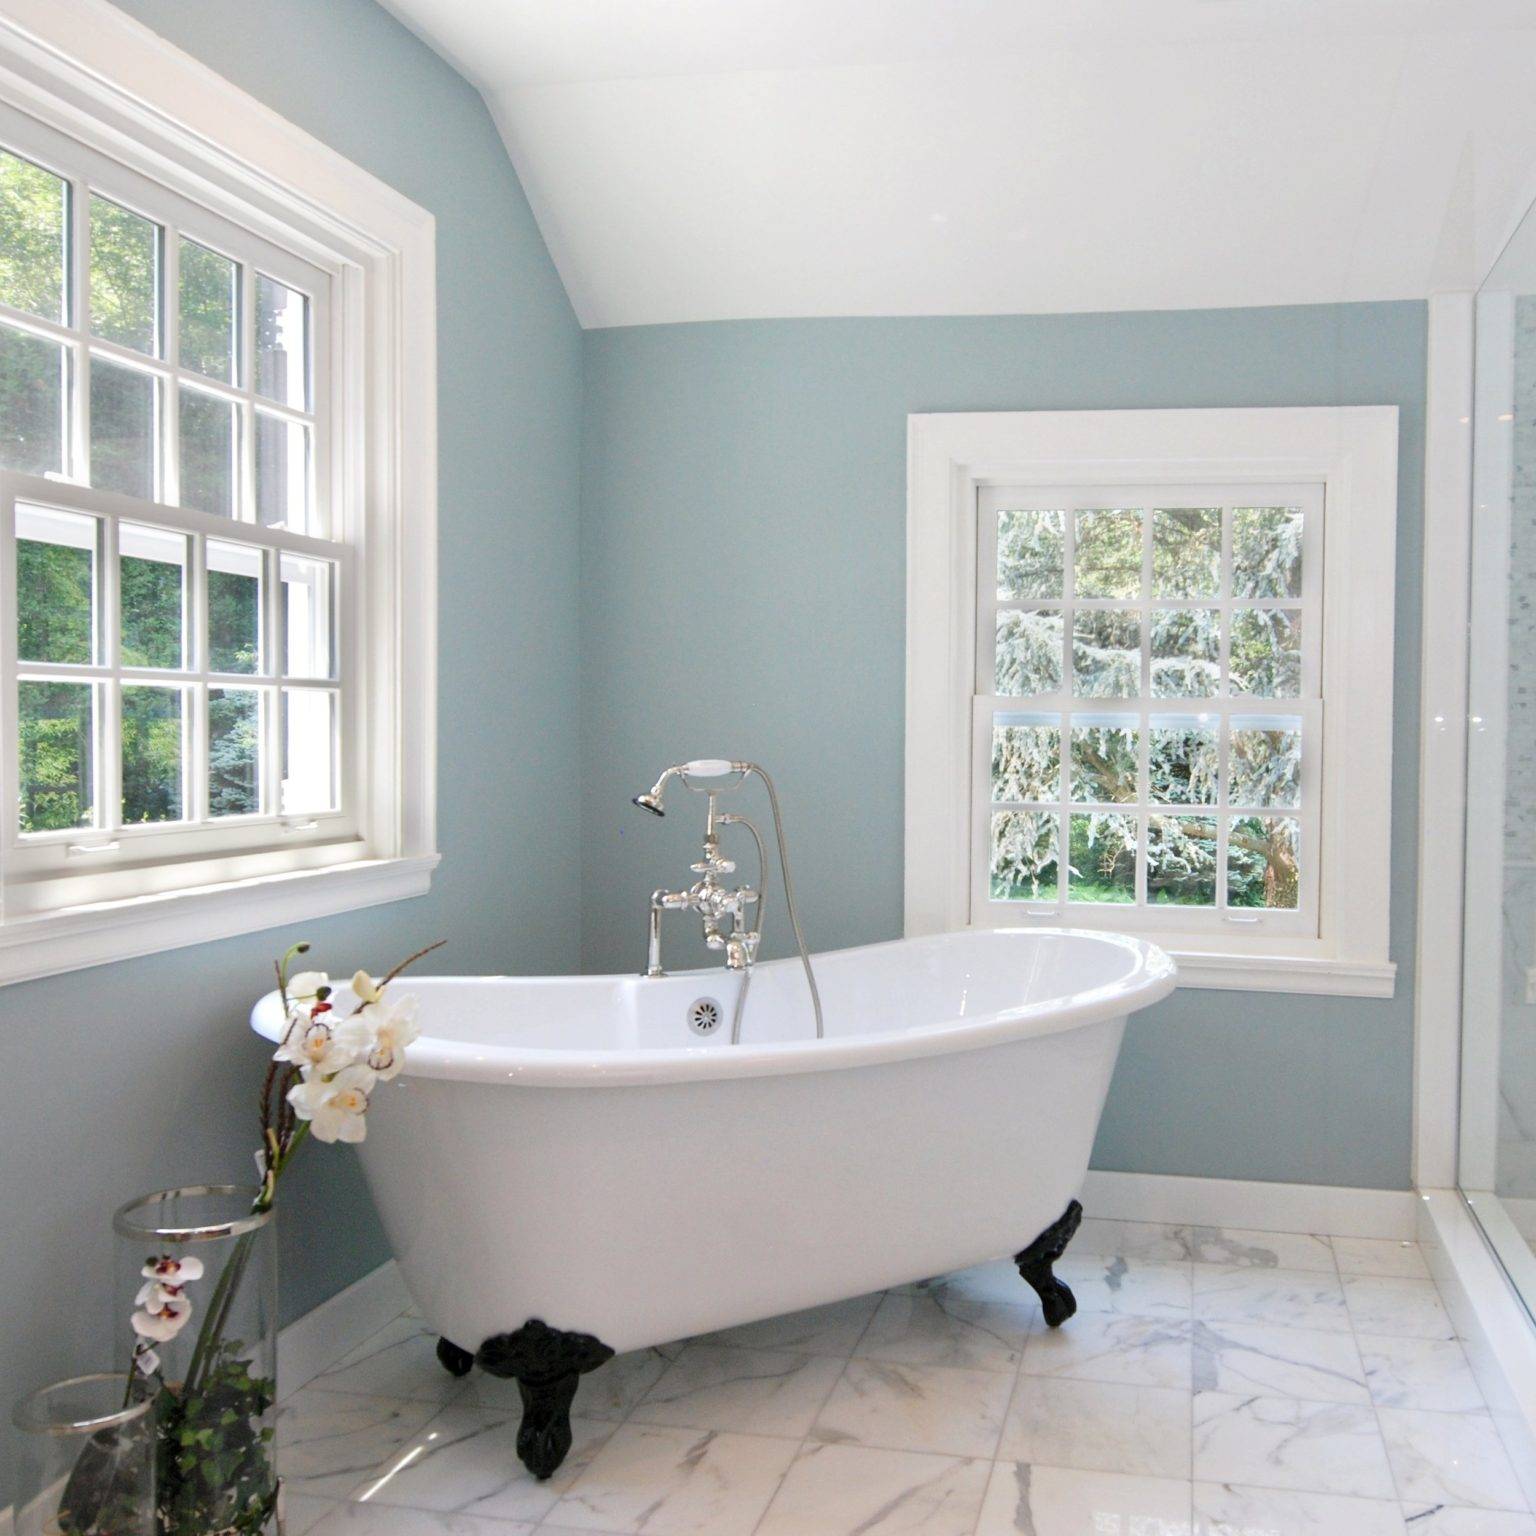 Sơn tường phòng tắm với màu xanh lam nhạt được các chuyên gia khuyến khích bởi nó mang lại cảm giác thư giãn tối đa.